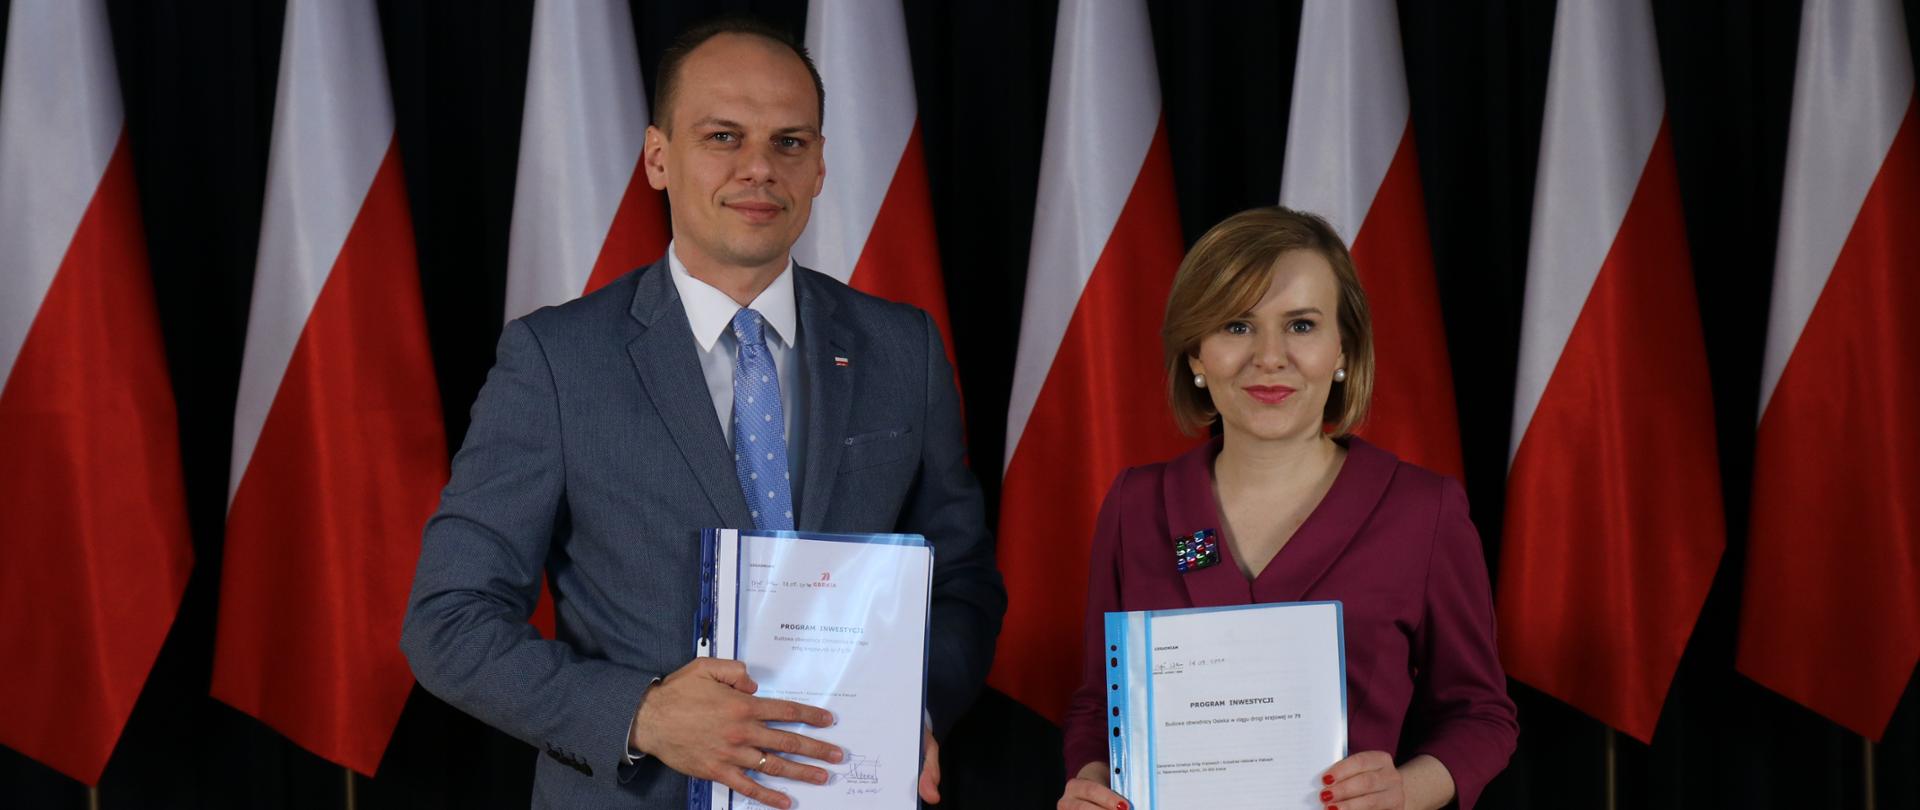 Na zdjęciu widać dwie osoby, które trzymają w rękach dokumenty. Po lewej stronie widać wysokiego mężczyznę, po prawej stronie kobietę. W ich tle stoją biało-czerwone flagi.